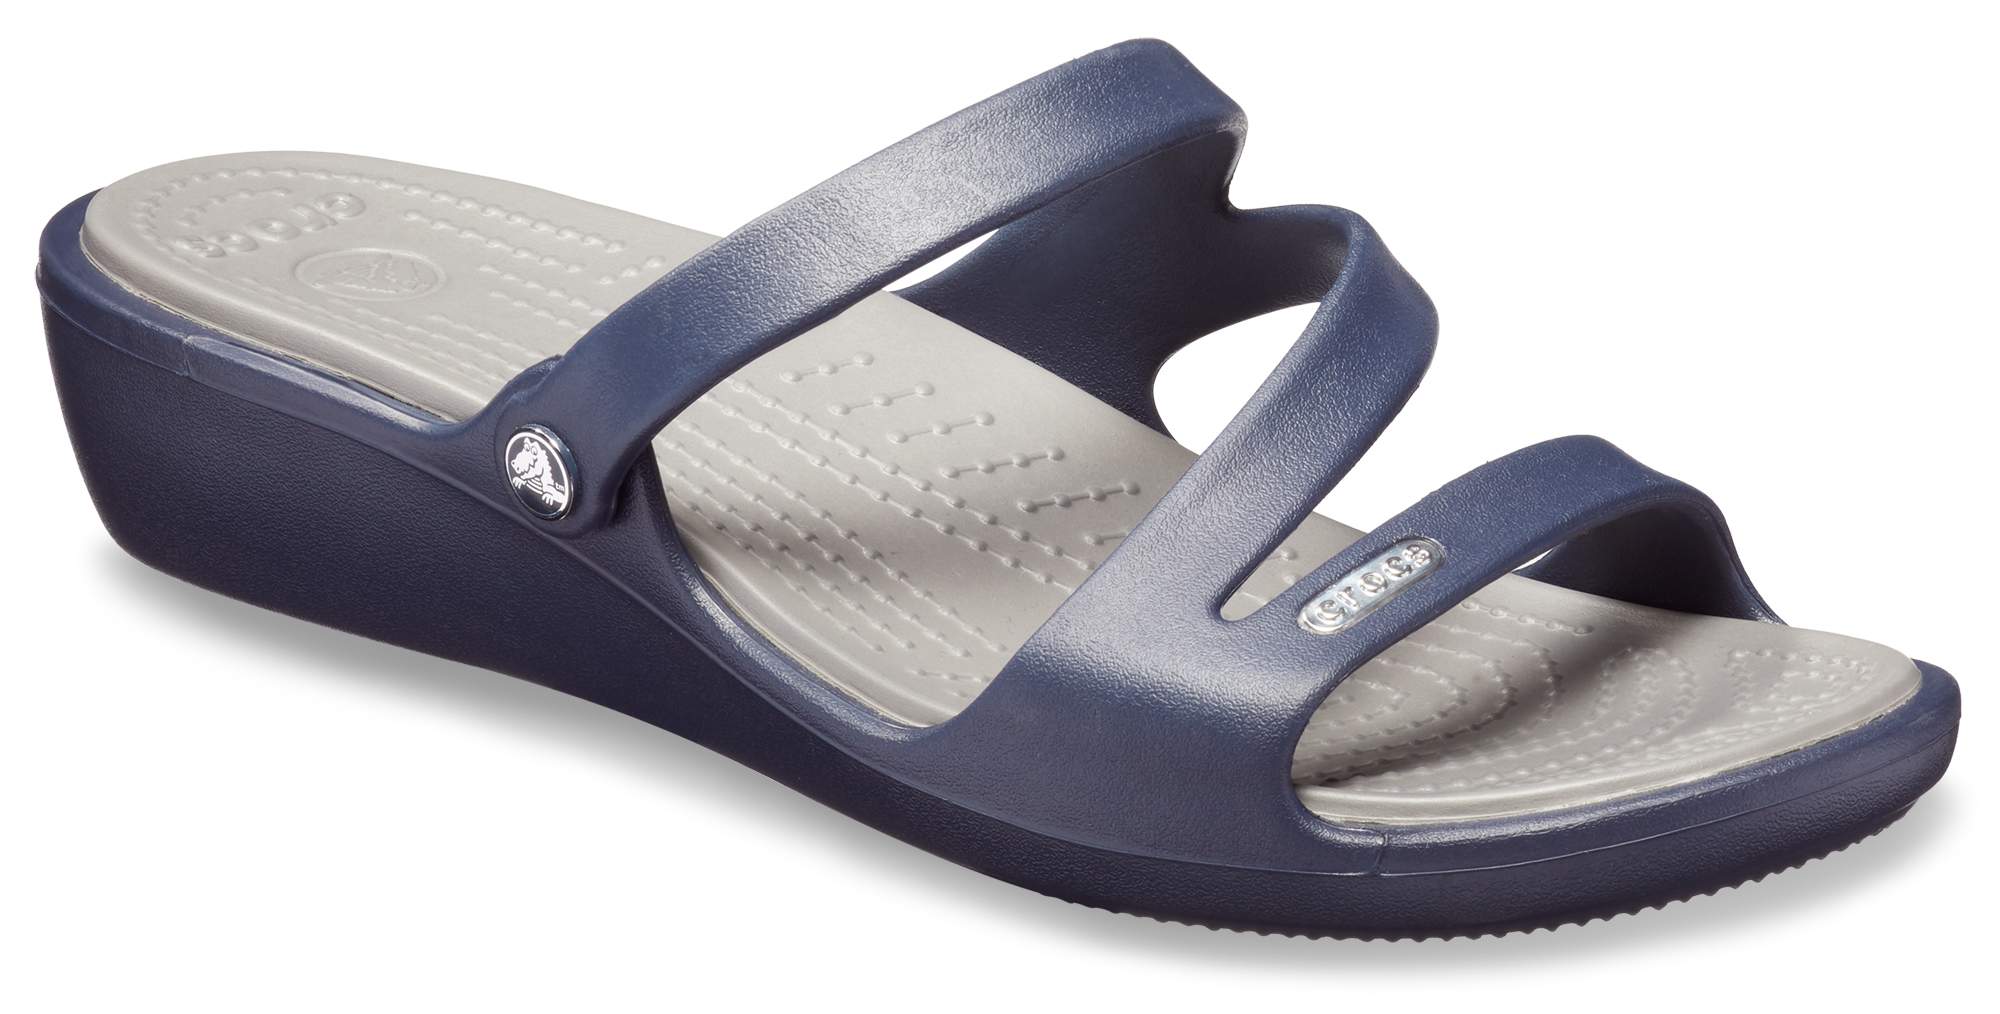 croc slippers uk